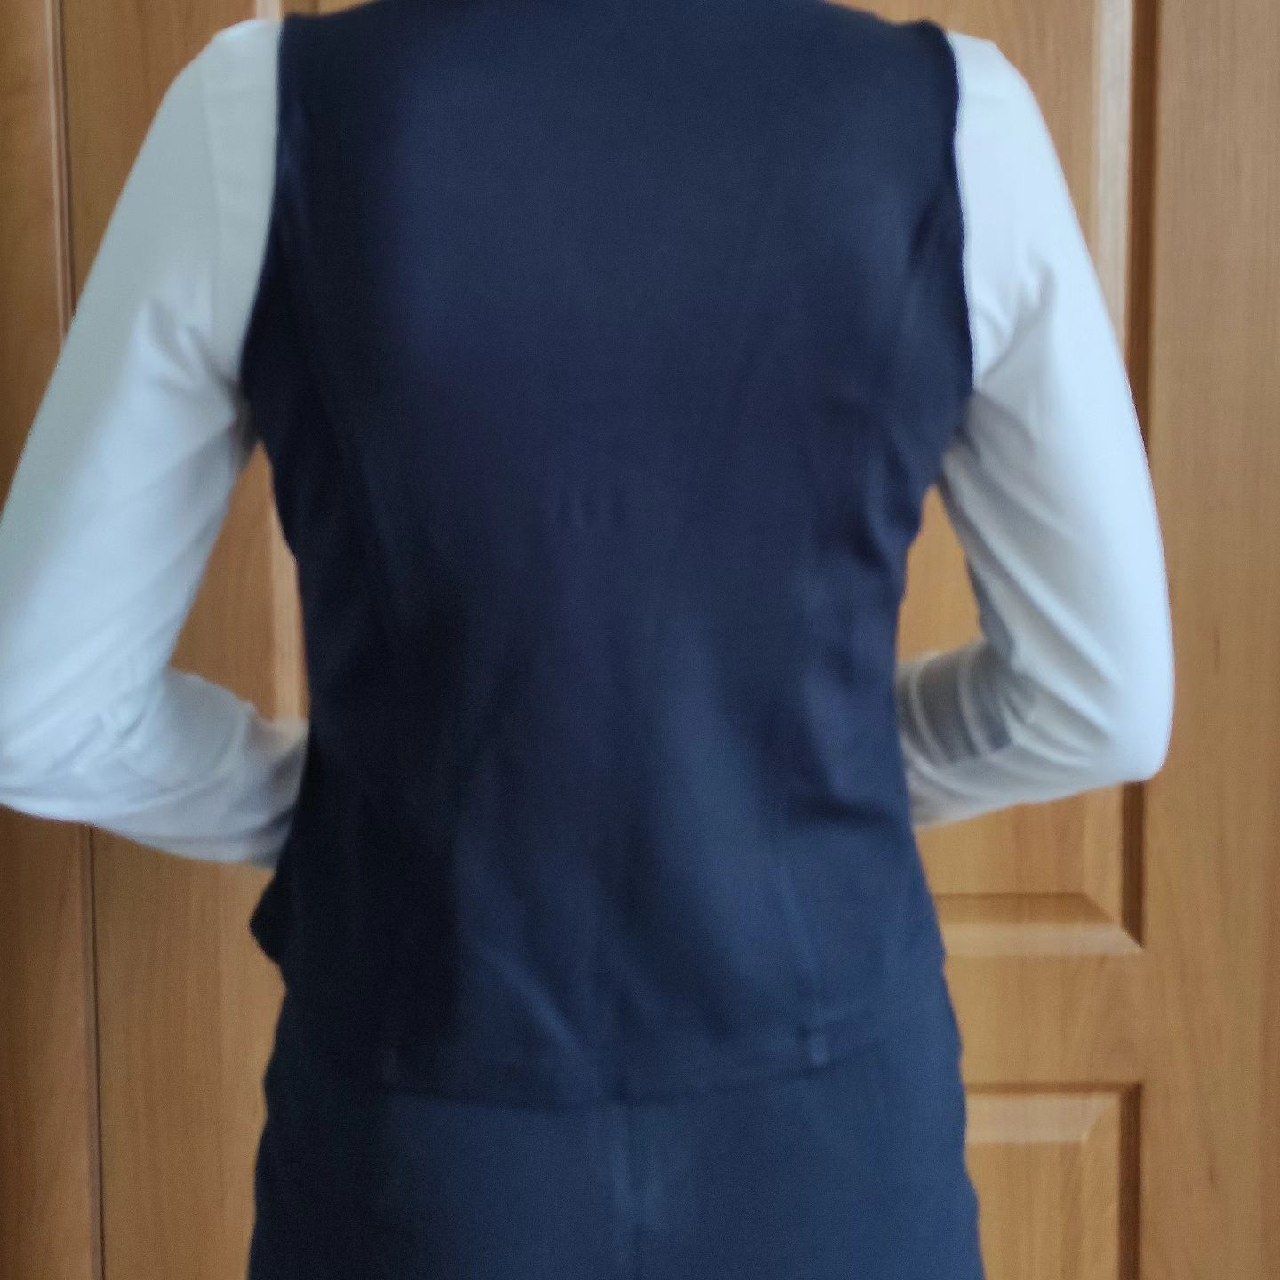 Школьная форма ( юбка+жилет+пиджак) на девочку 14-16 лет, рост 160-164